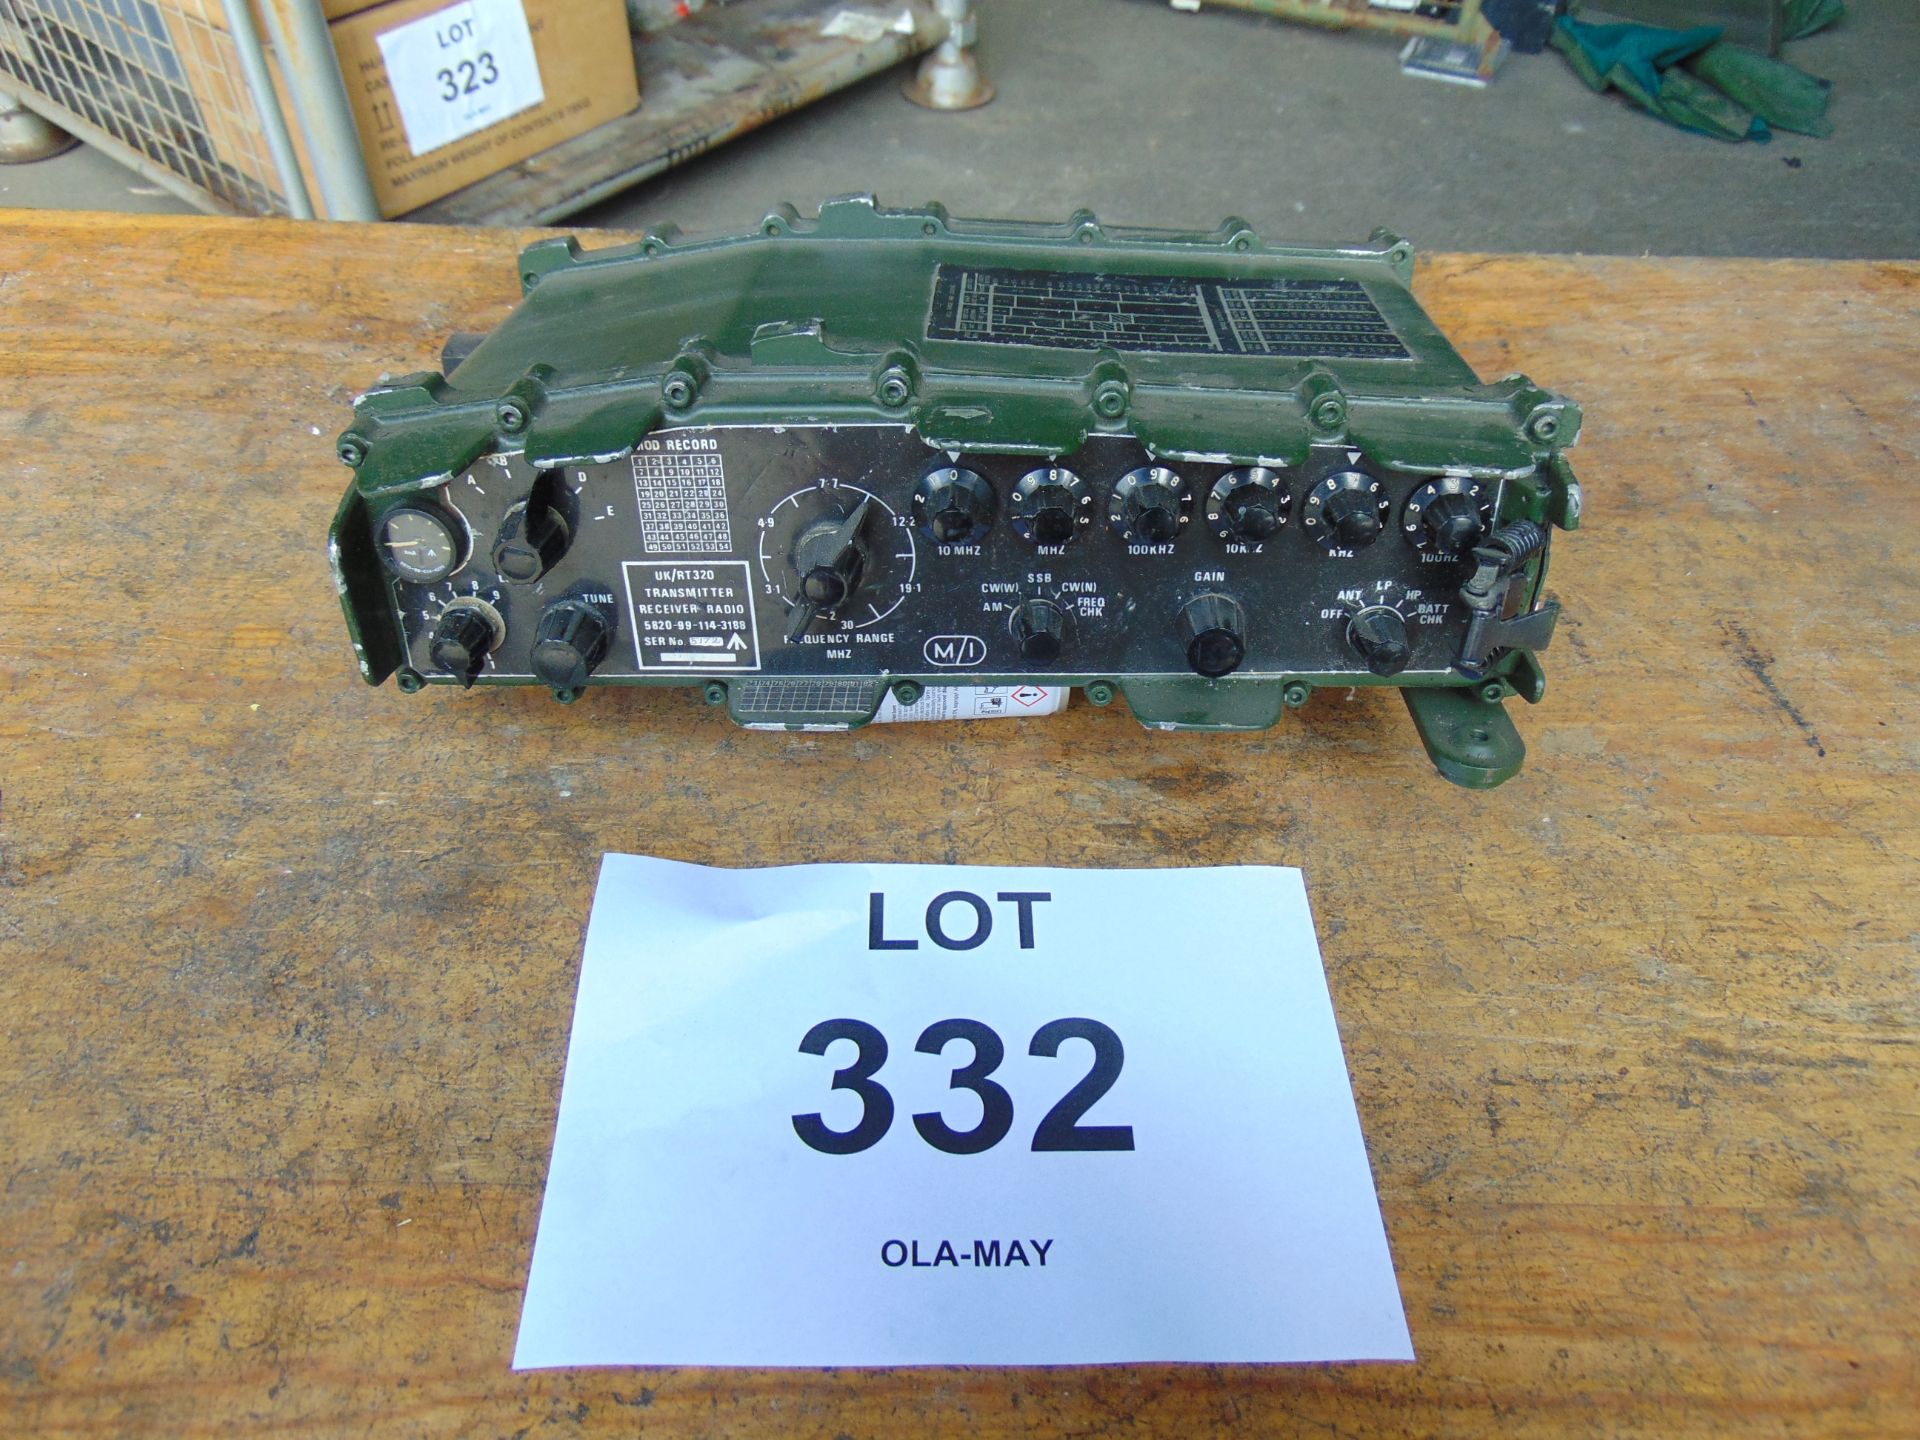 Clansman UK RT/320 HF British Army Transmitter Receiver - Image 3 of 5